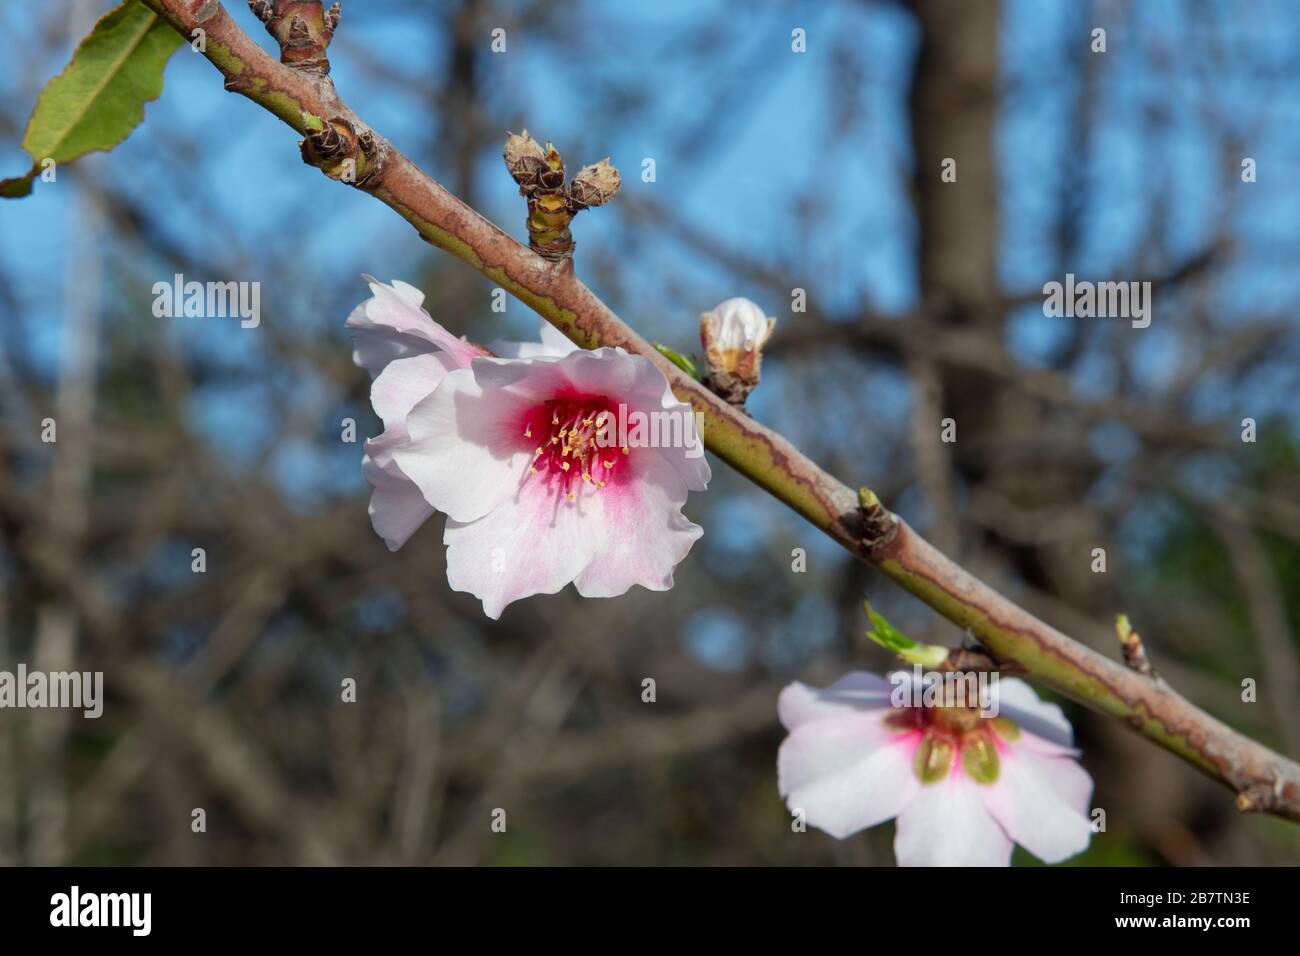 Peu de fleurs d'amandes roses pâle solitaires en fleur de l'arbre de fruits domestiqué Prunus dulcis, cultivées dans un climat méditerranéen plus chaud Banque D'Images